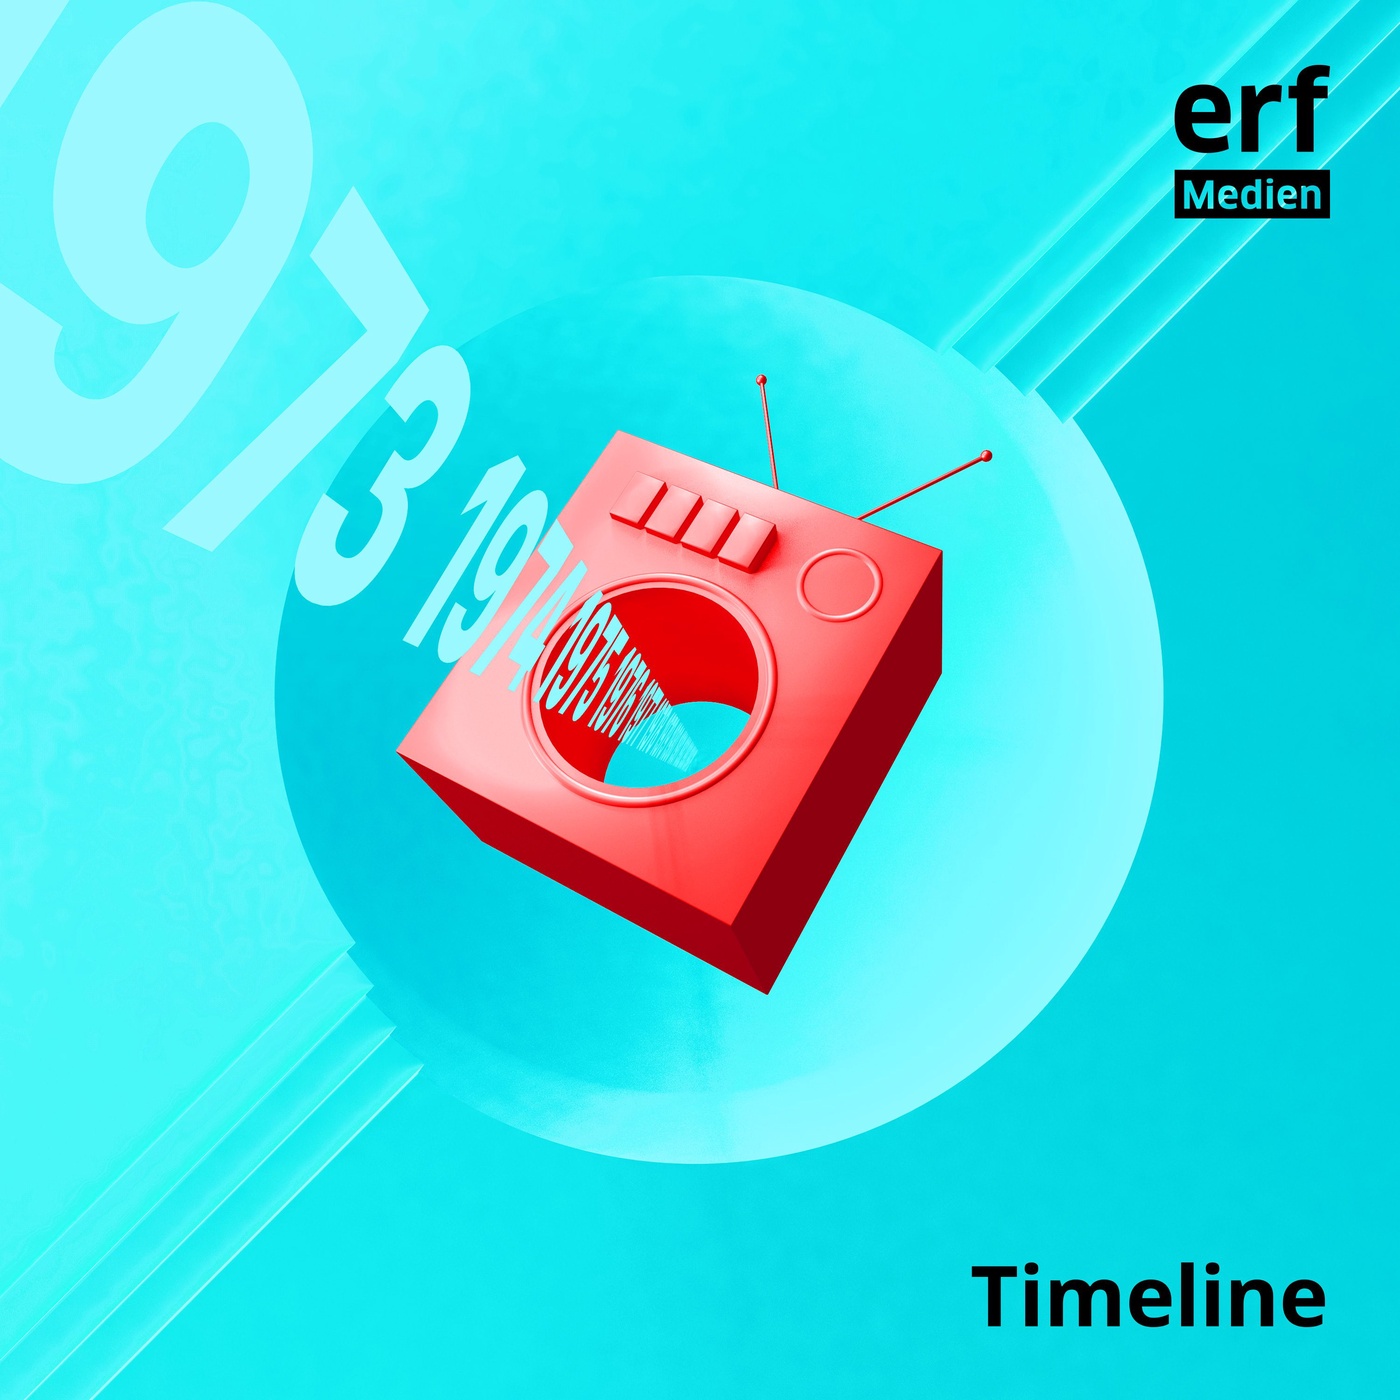 Timeline – 50 Jahre ERF Medien Schweiz